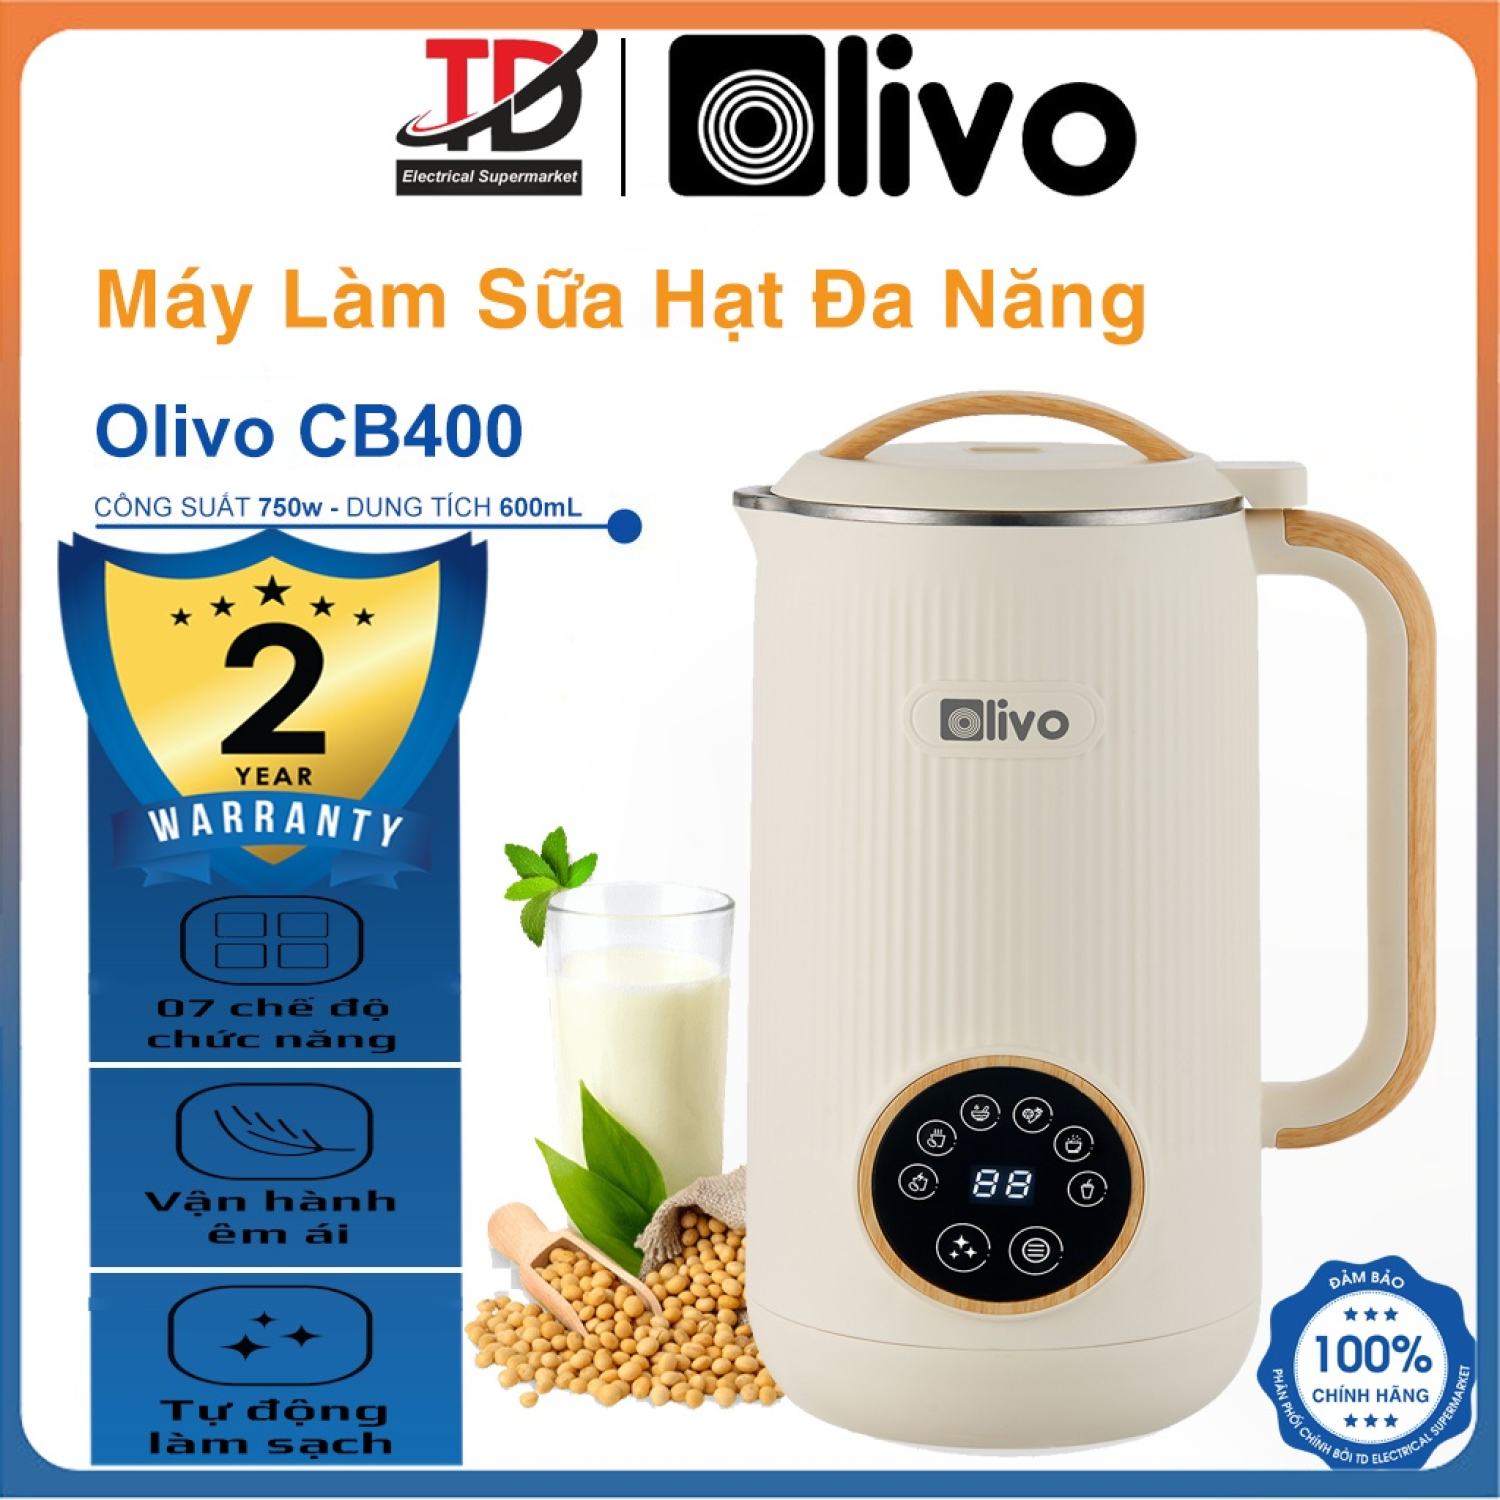 Máy Làm Sữa Hạt Đa Năng Olivo Cb400, 750W-600ml, Vận Hành Êm Ái